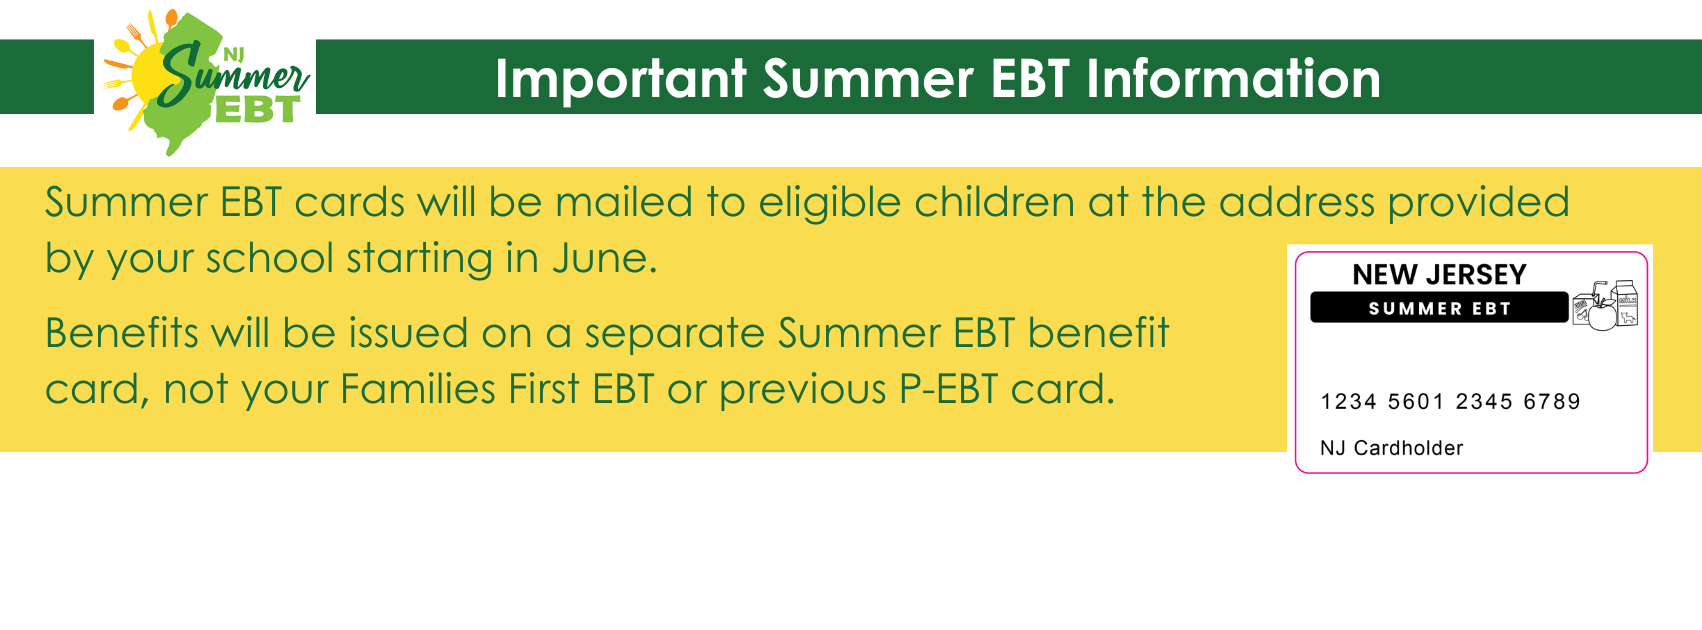  Important information about Summer EBT visit nj dot gov slash summer e b t